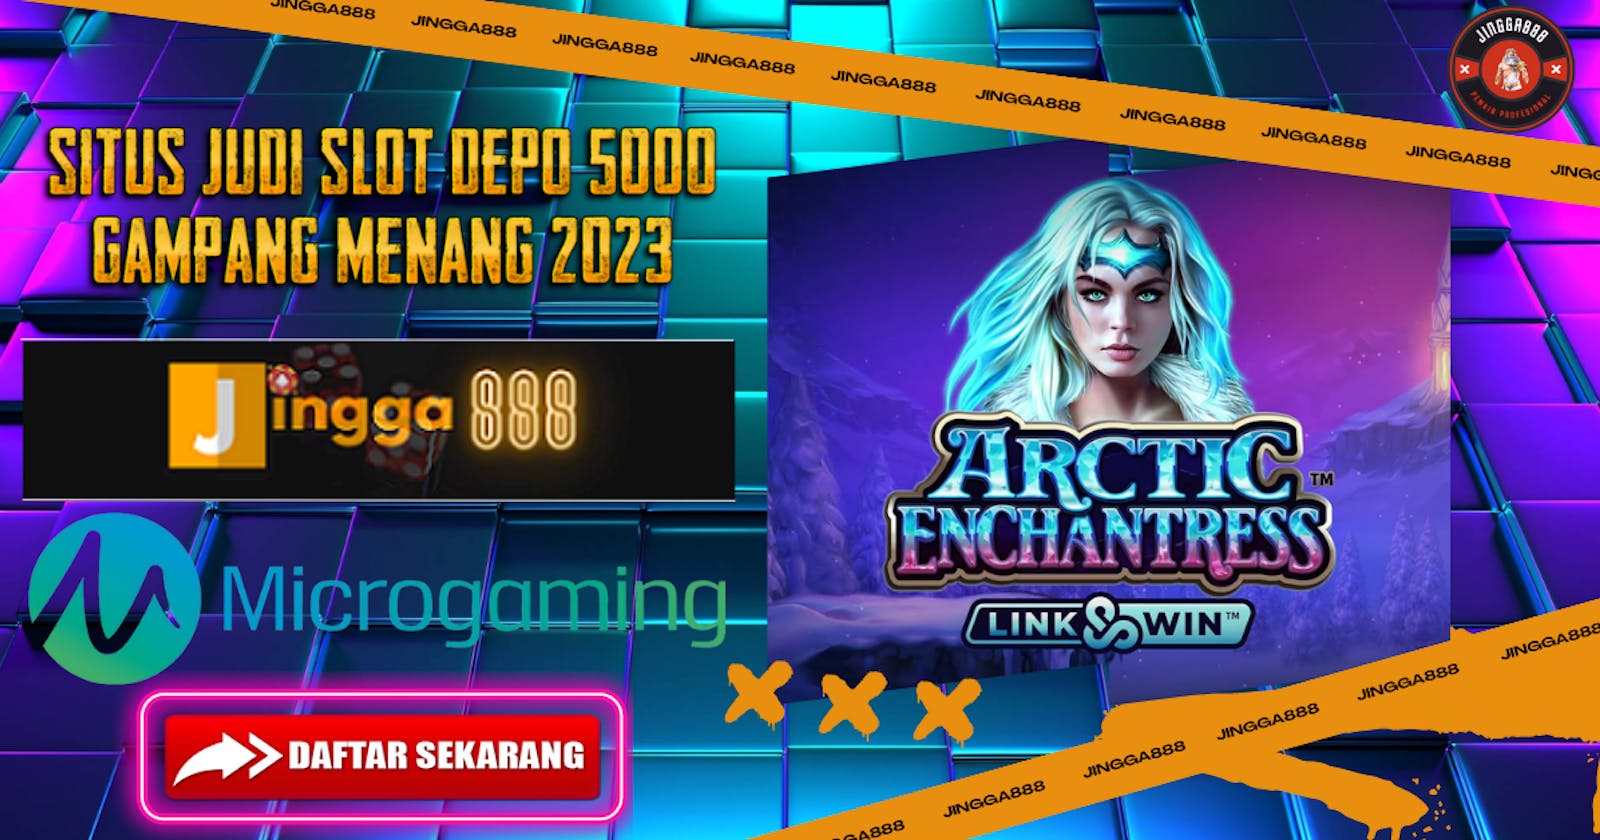 Jingga888 : Daftar Situs Judi Slot Depo 5000 Gampang Menang 2023